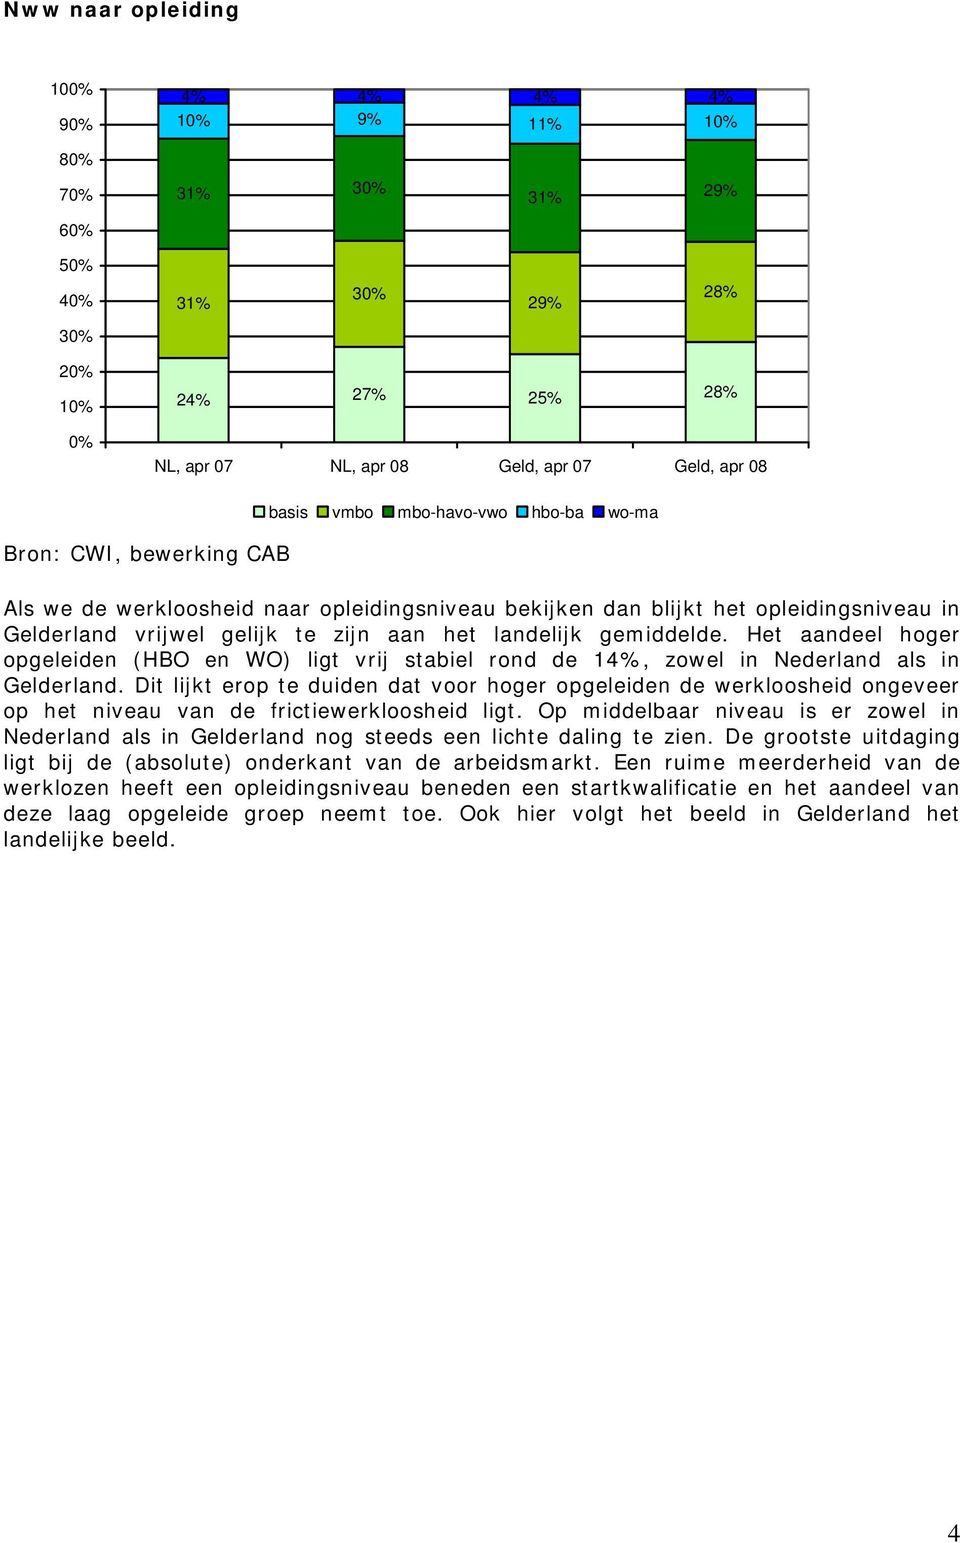 Het aandeel hoger opgeleiden (HBO en WO) ligt vrij stabiel rond de 14%, zowel in Nederland als in Gelderland.